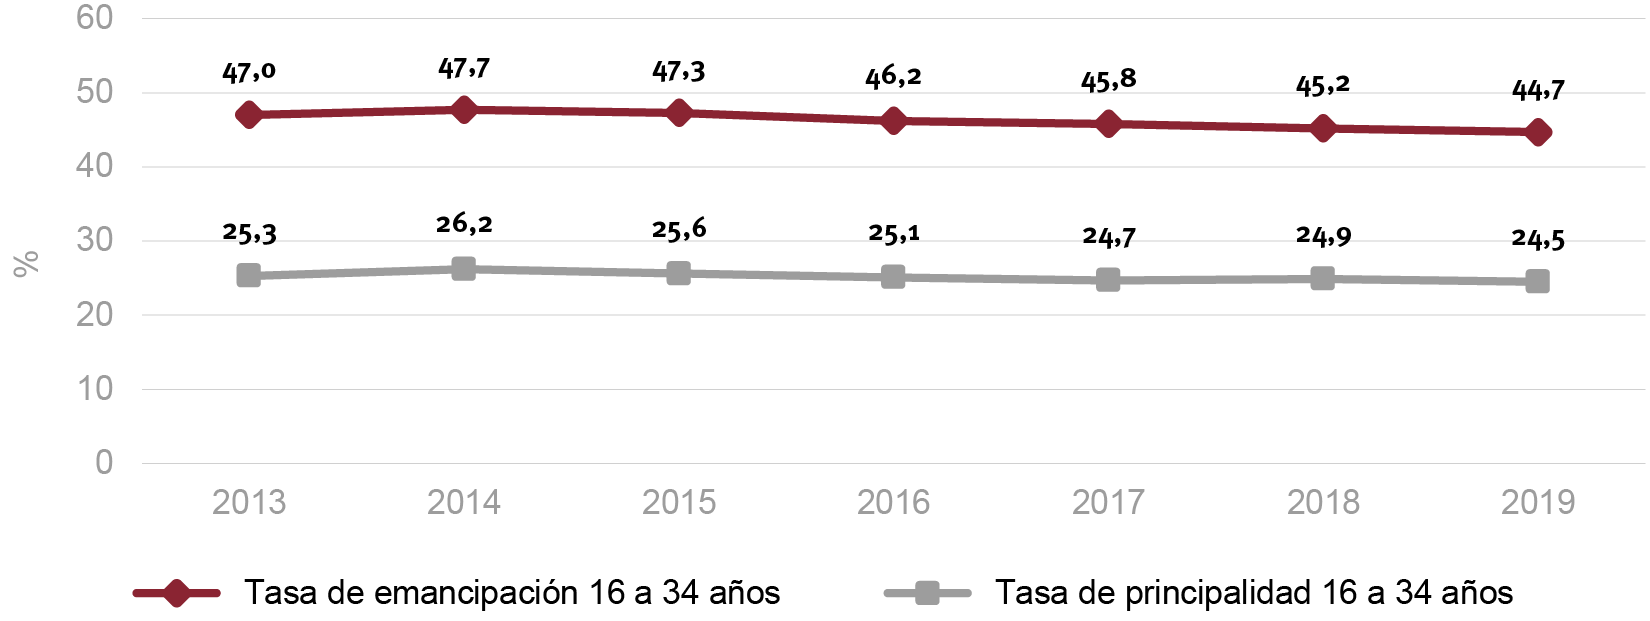 Fig. 1/ Evolución tasa de emancipación y tasa de principalidad de los hogares jóvenes de 16 a 34 años. España, 2013-2019.